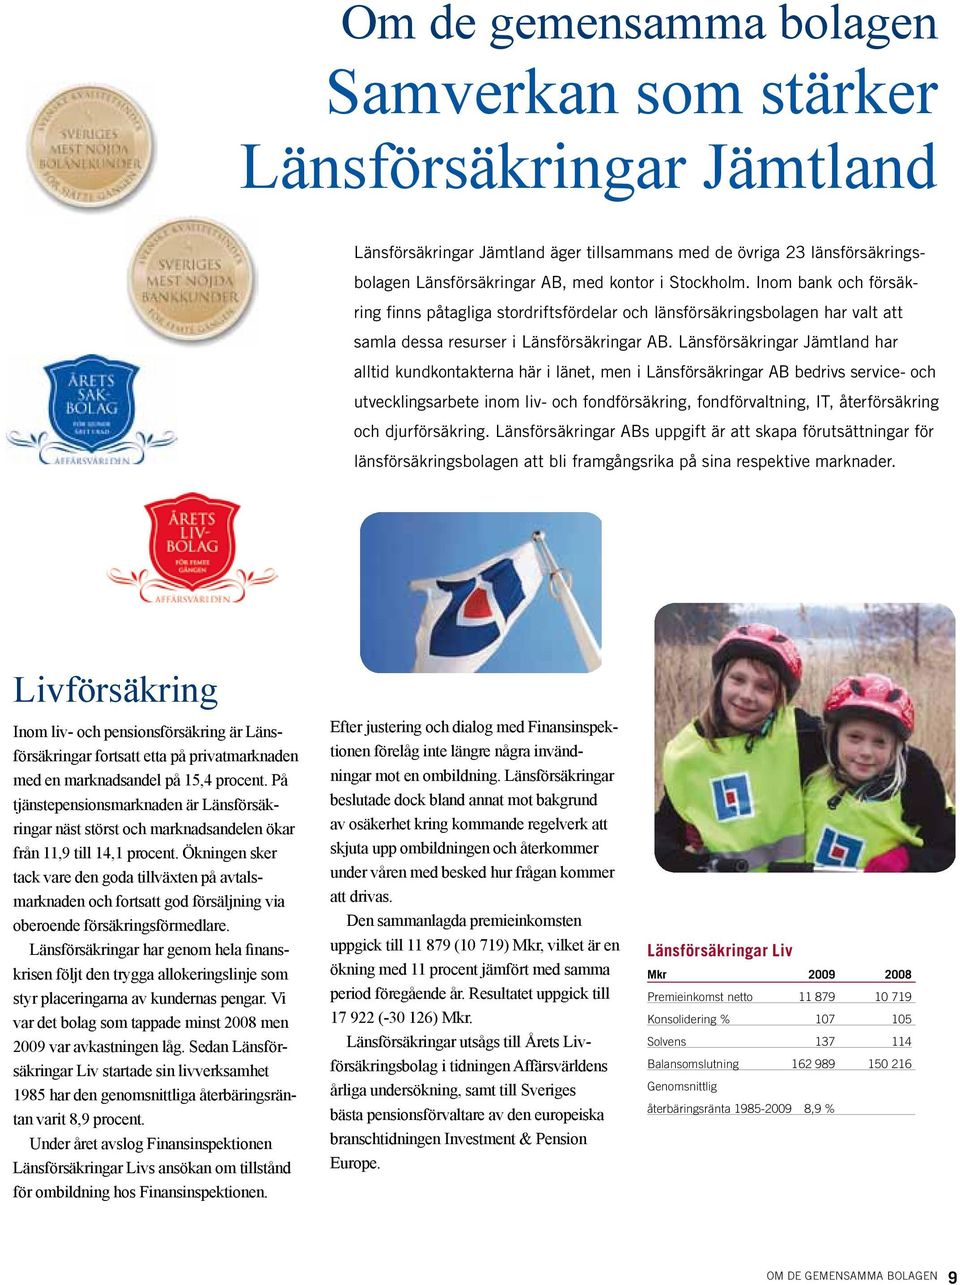 Länsförsäkringar Jämtland har alltid kundkontakterna här i länet, men i Länsförsäkringar AB bedrivs service- och utvecklingsarbete inom liv- och fondförsäkring, fondförvaltning, IT, återförsäkring